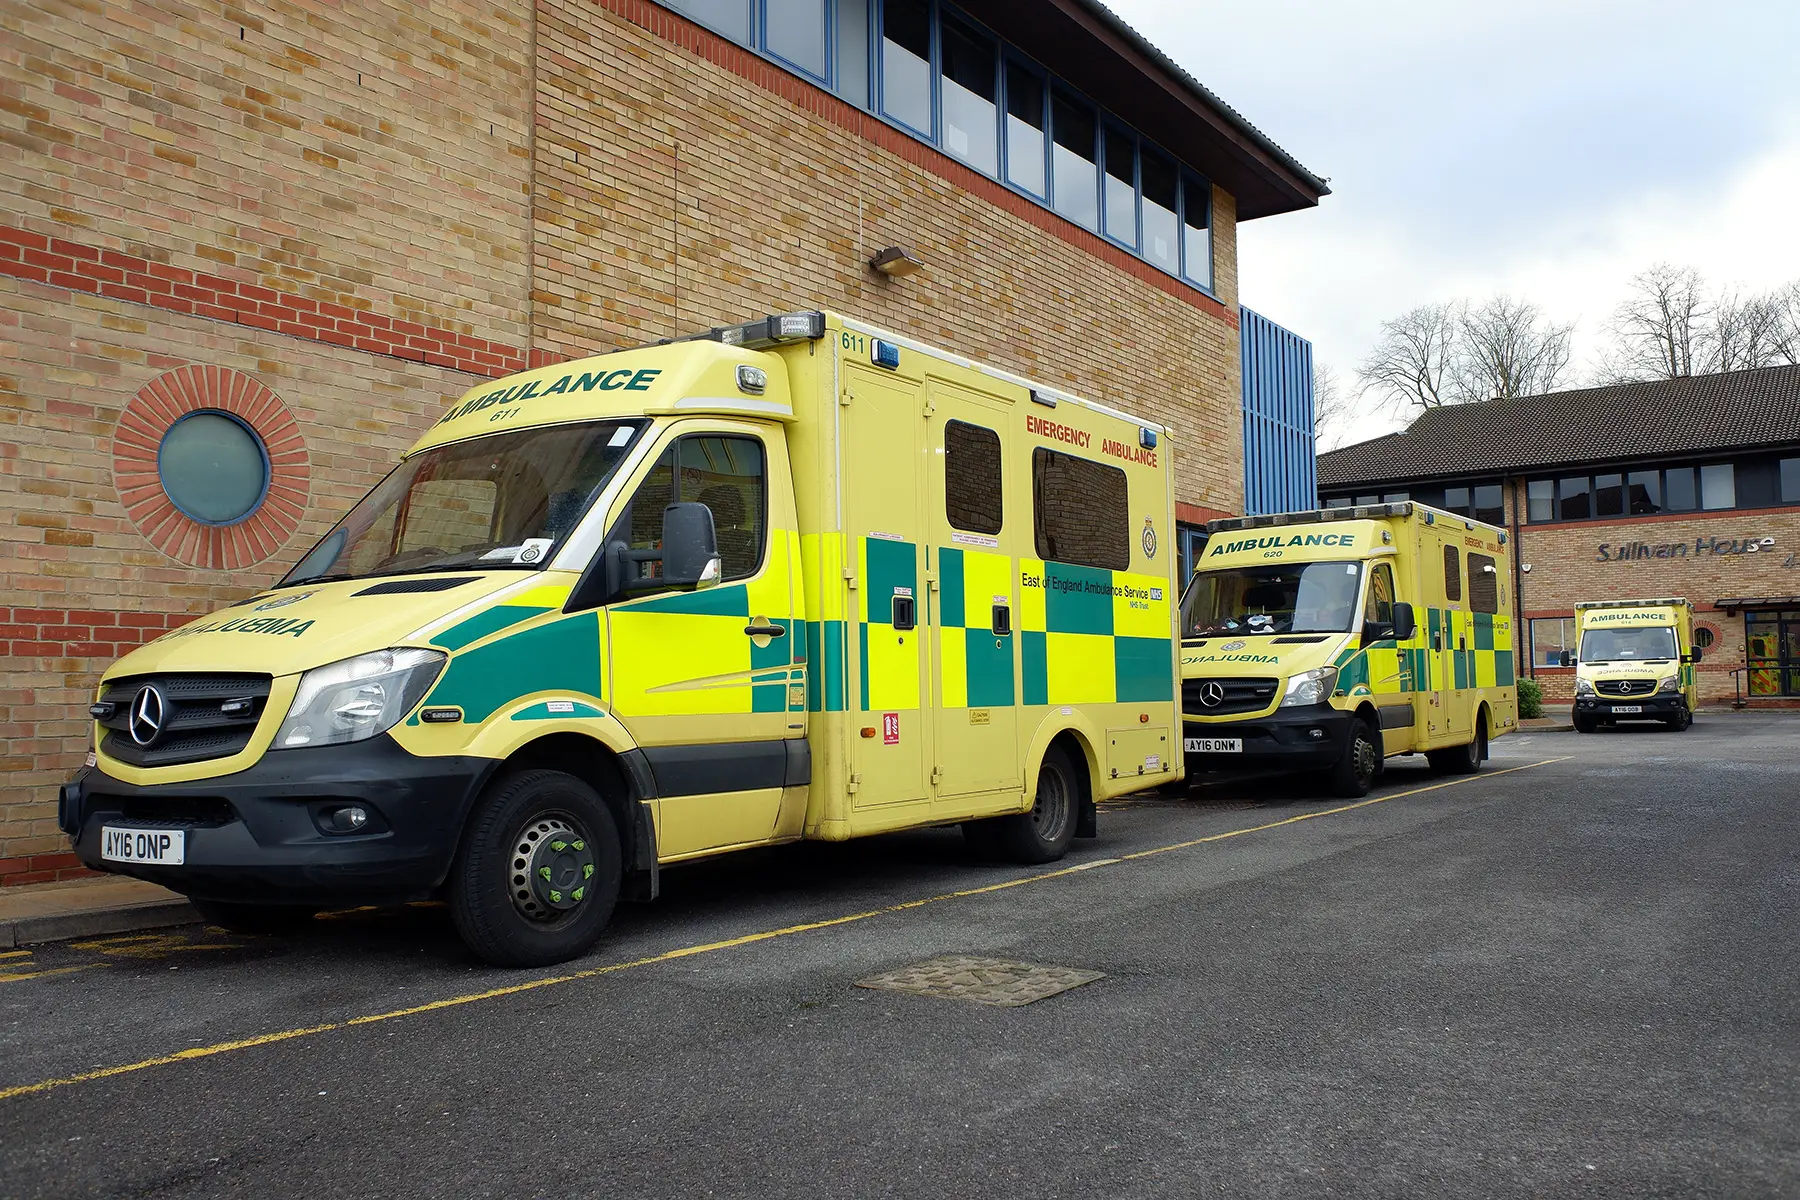 Ambulances at a hospital in Watford, UK